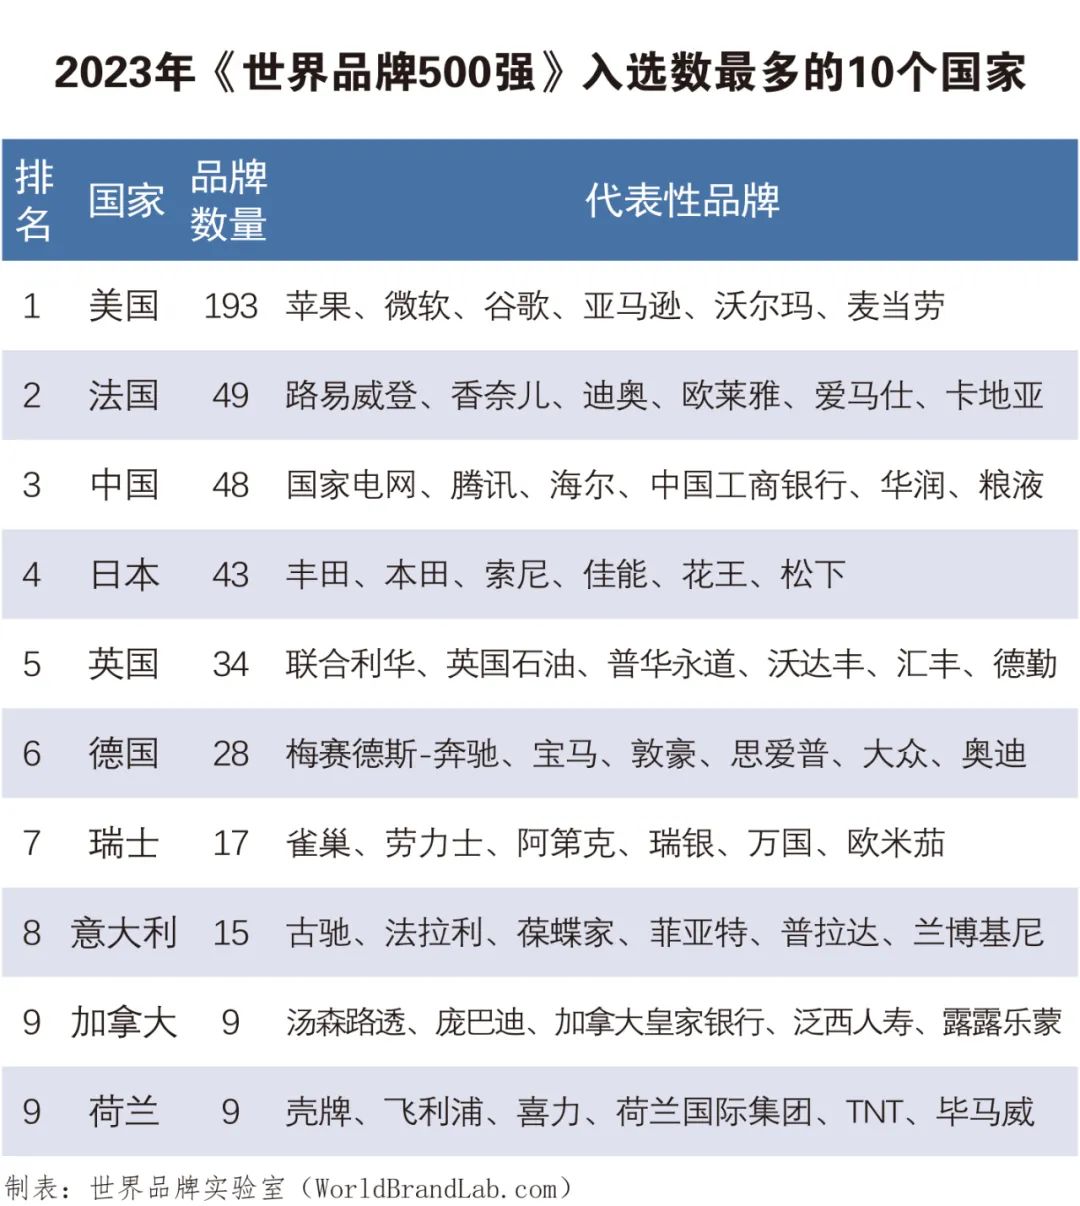 世界品牌实验室发布2023年世界品牌500强 中国入选品牌跃居全球第三